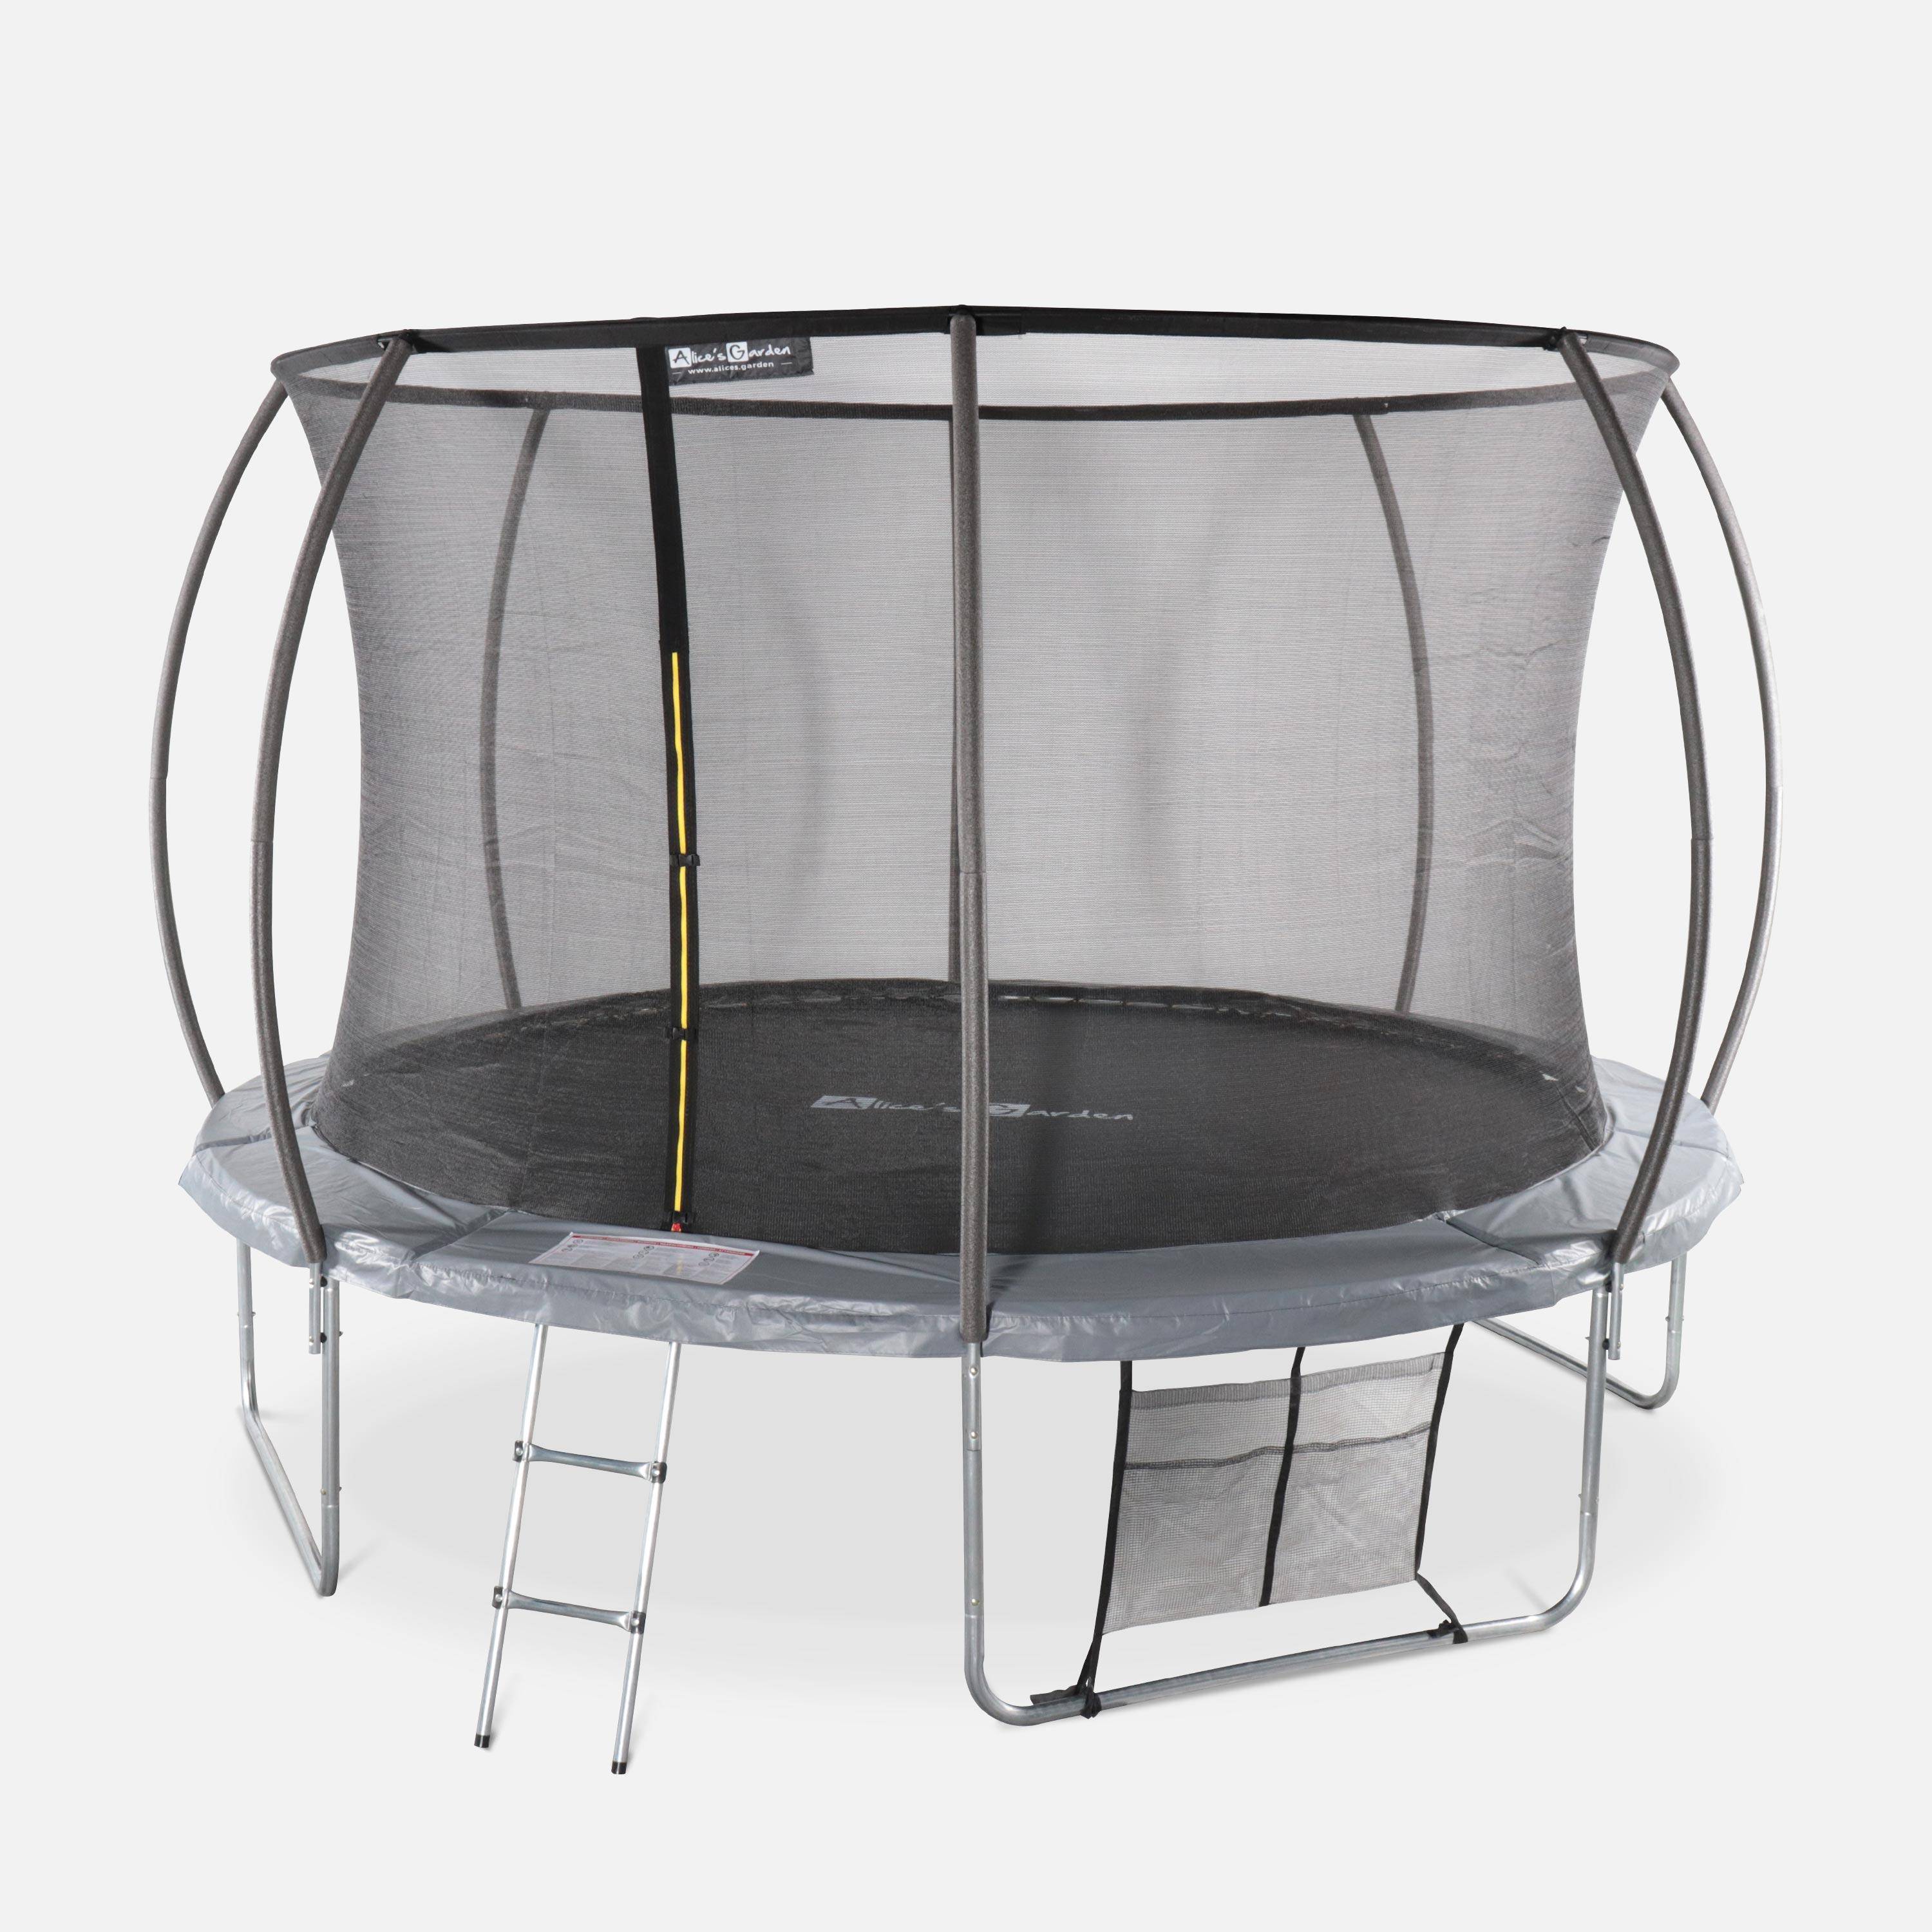 Cama elástica redonda 370 cm gris con red de seguridad interna - Saturne INNER XXL- Nuevo modelo - cama elástica de jardín 3,70 m 370 cm | Calidad PRO. | Normas de la UE. Photo2